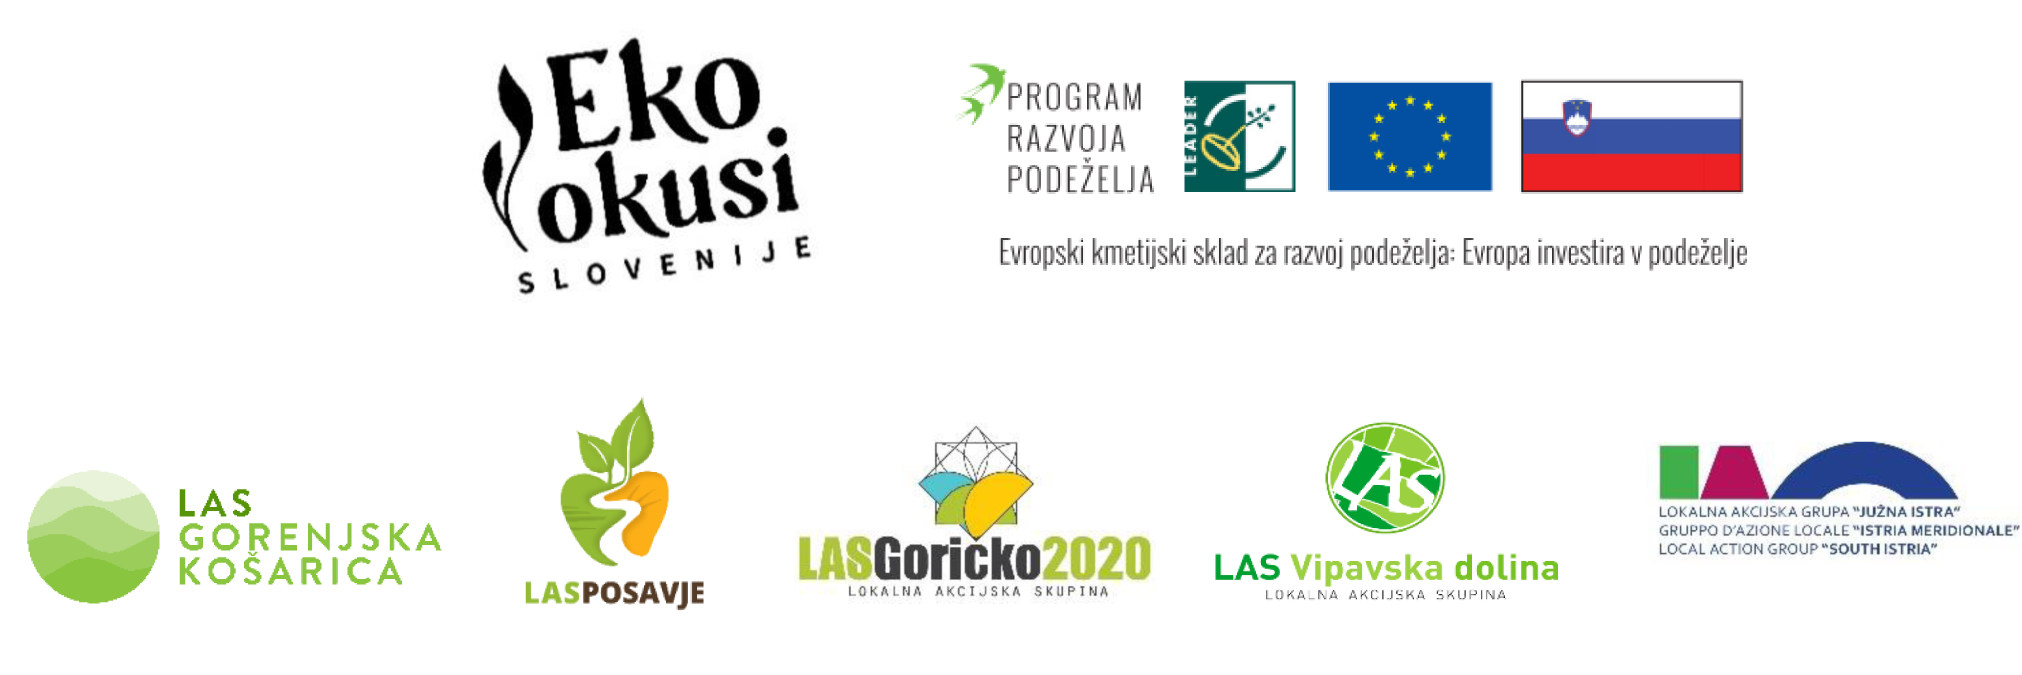 LAS EKO Okusi Slovenije, projekt financira Evropski kmetijski sklad za razvoj podeželja